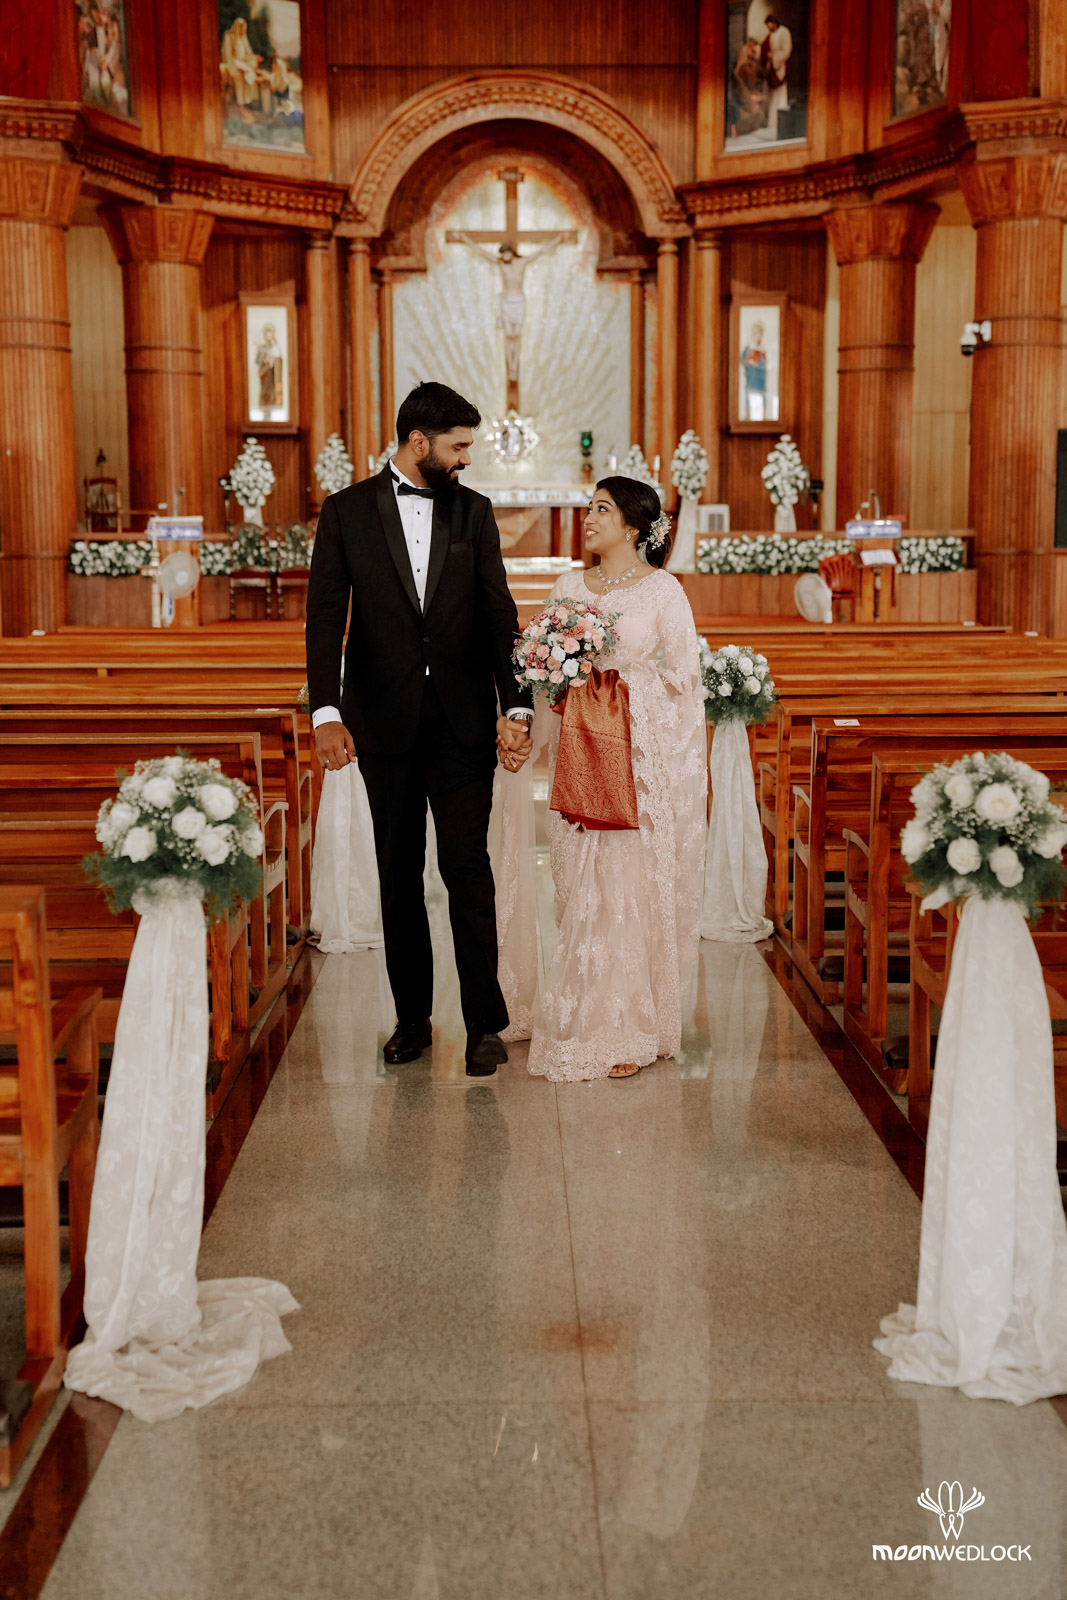 bangalore-christian-wedding-photography-moonwedlock (27)